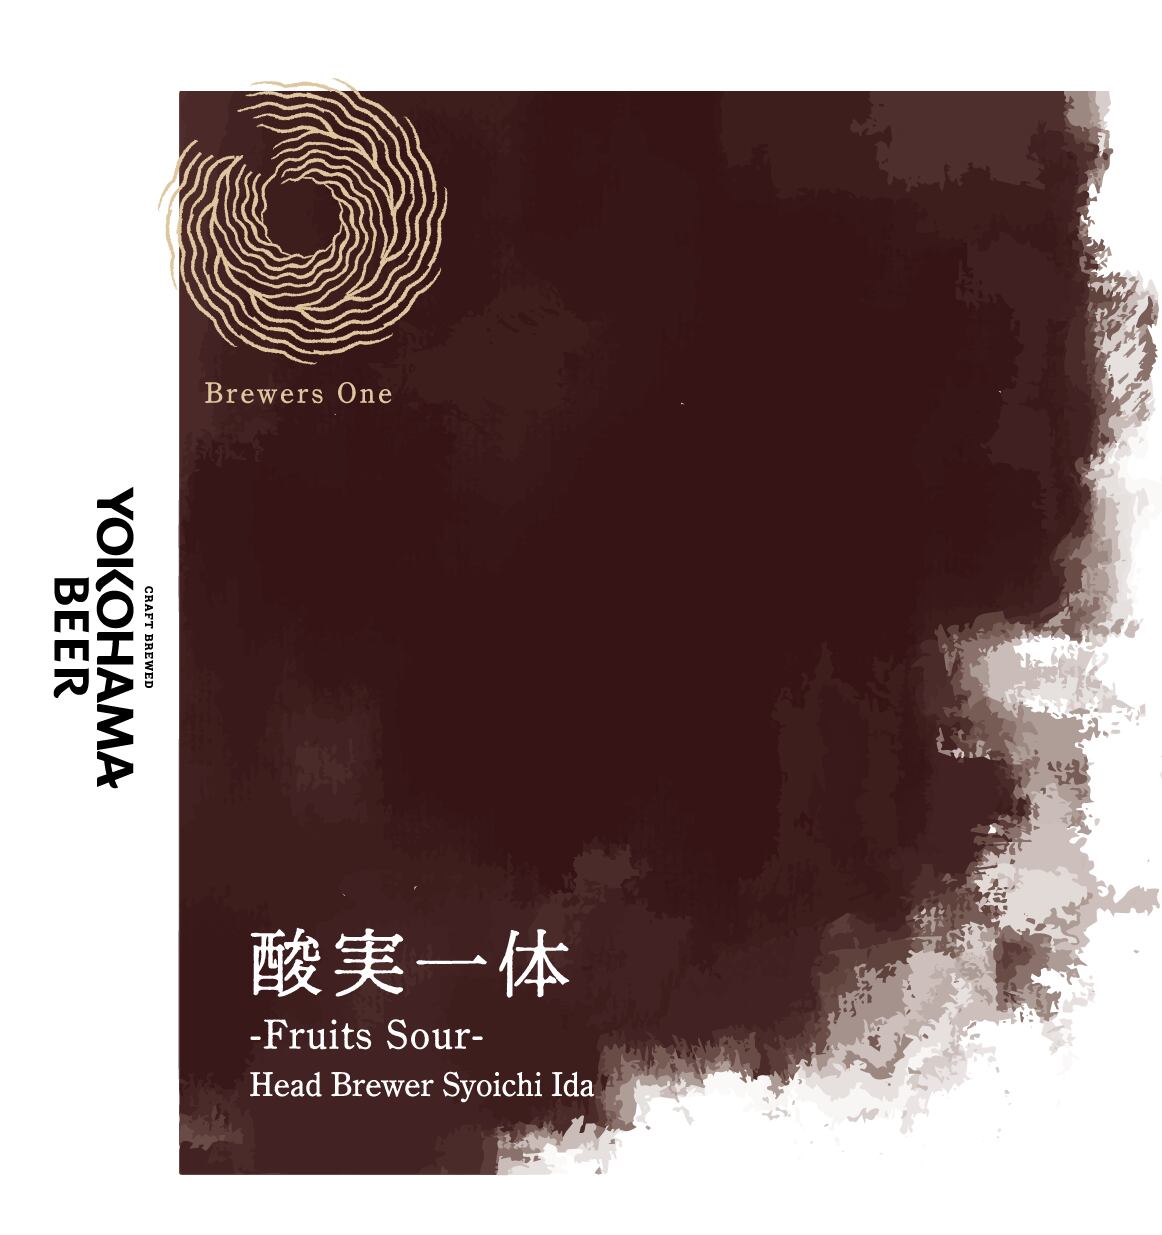 クール便【Brewers One】酸実一体-Fruits Sour- byHead Brewer Syoichi Ida 2本入りBOX